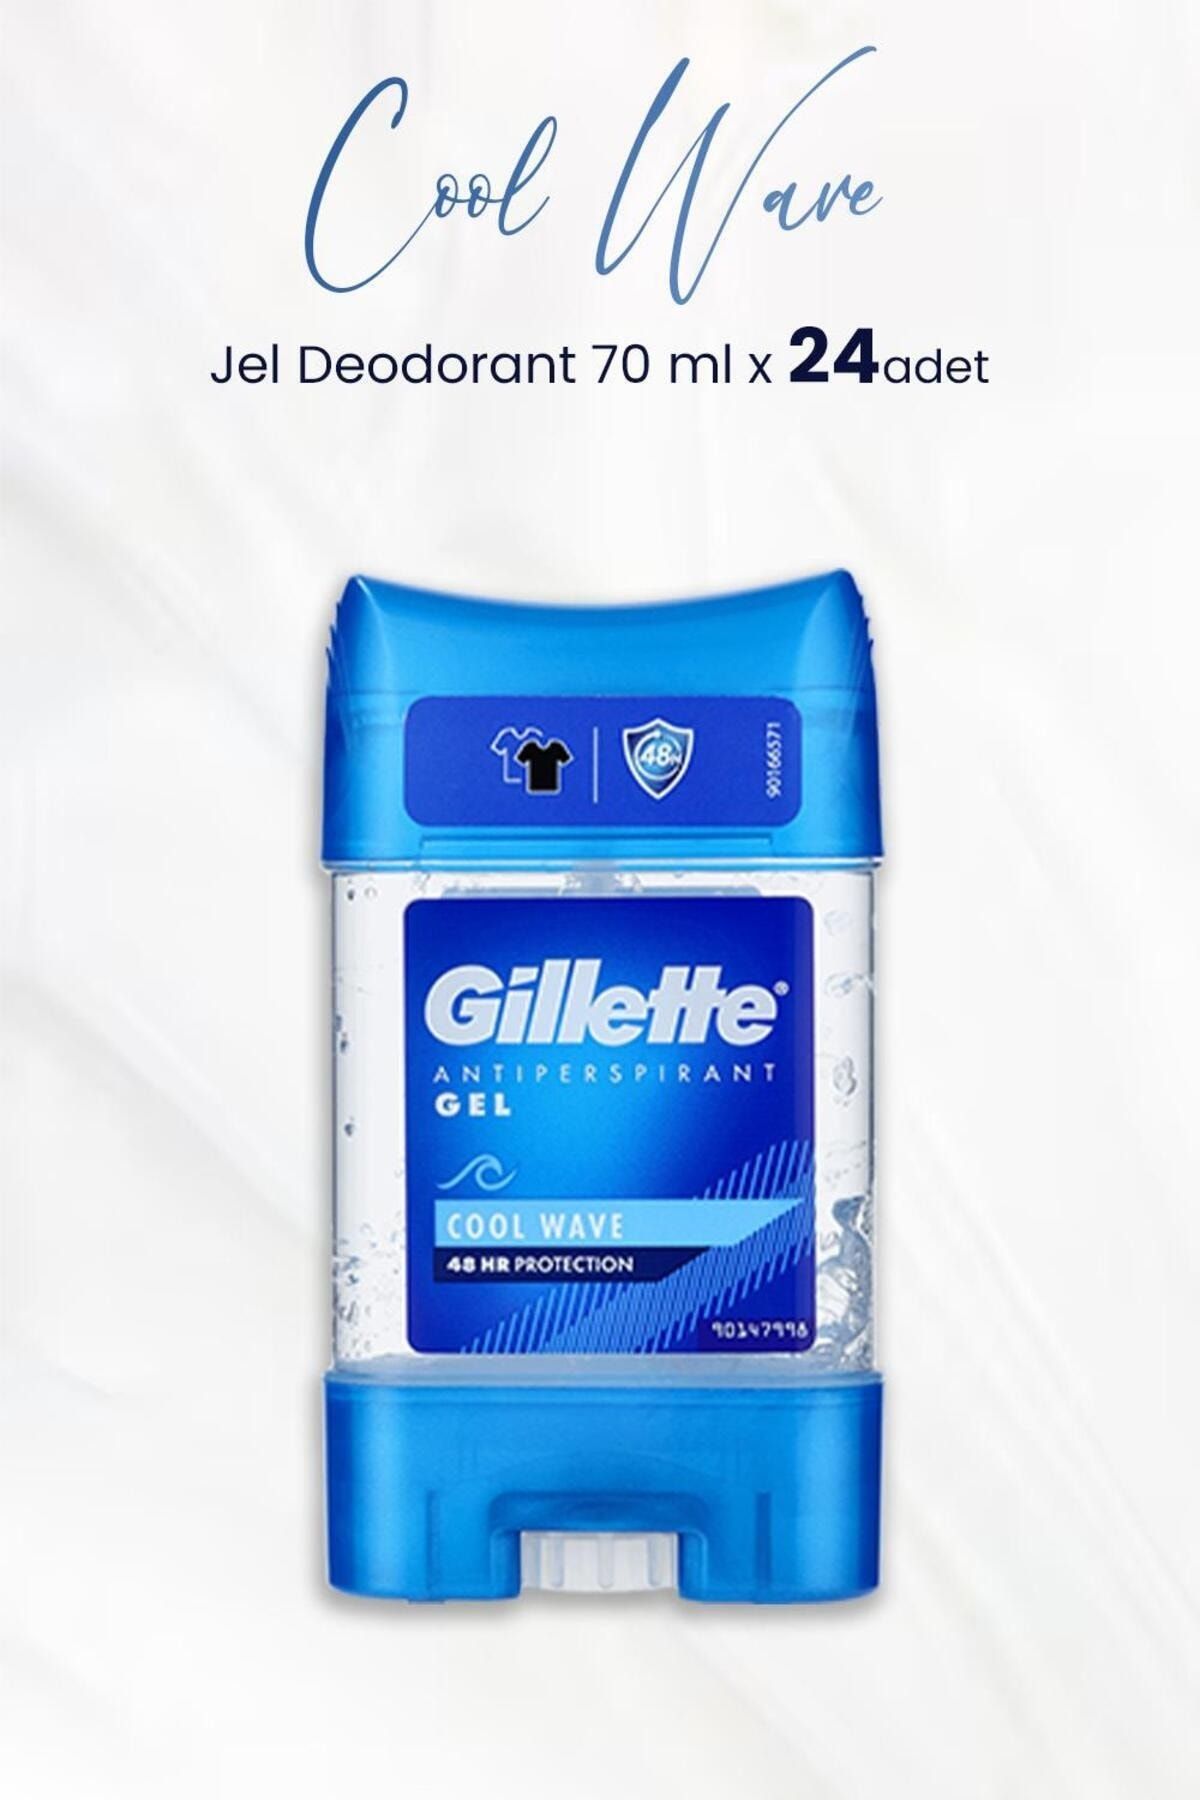 Gillette Antiperspirant Gel Cool Wave 70 ml x 24 Adet